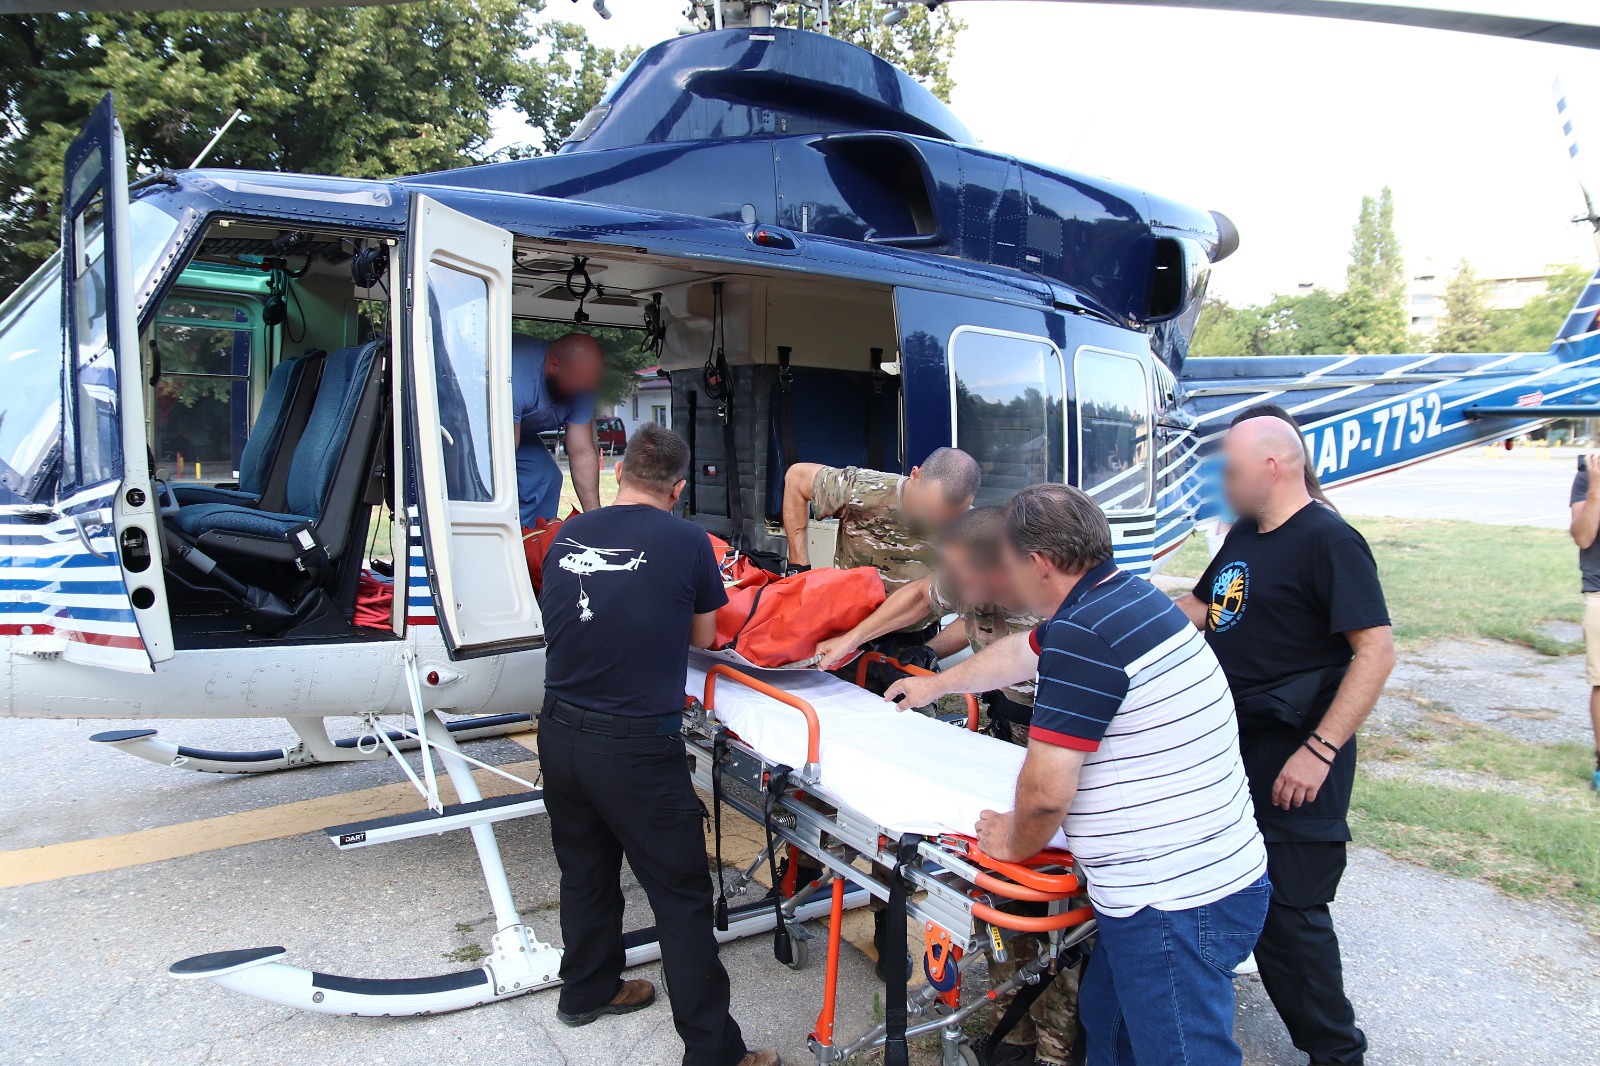 Повредениот параглајдерист со полициски хеликоптер пренесен за укажување лекарска помош